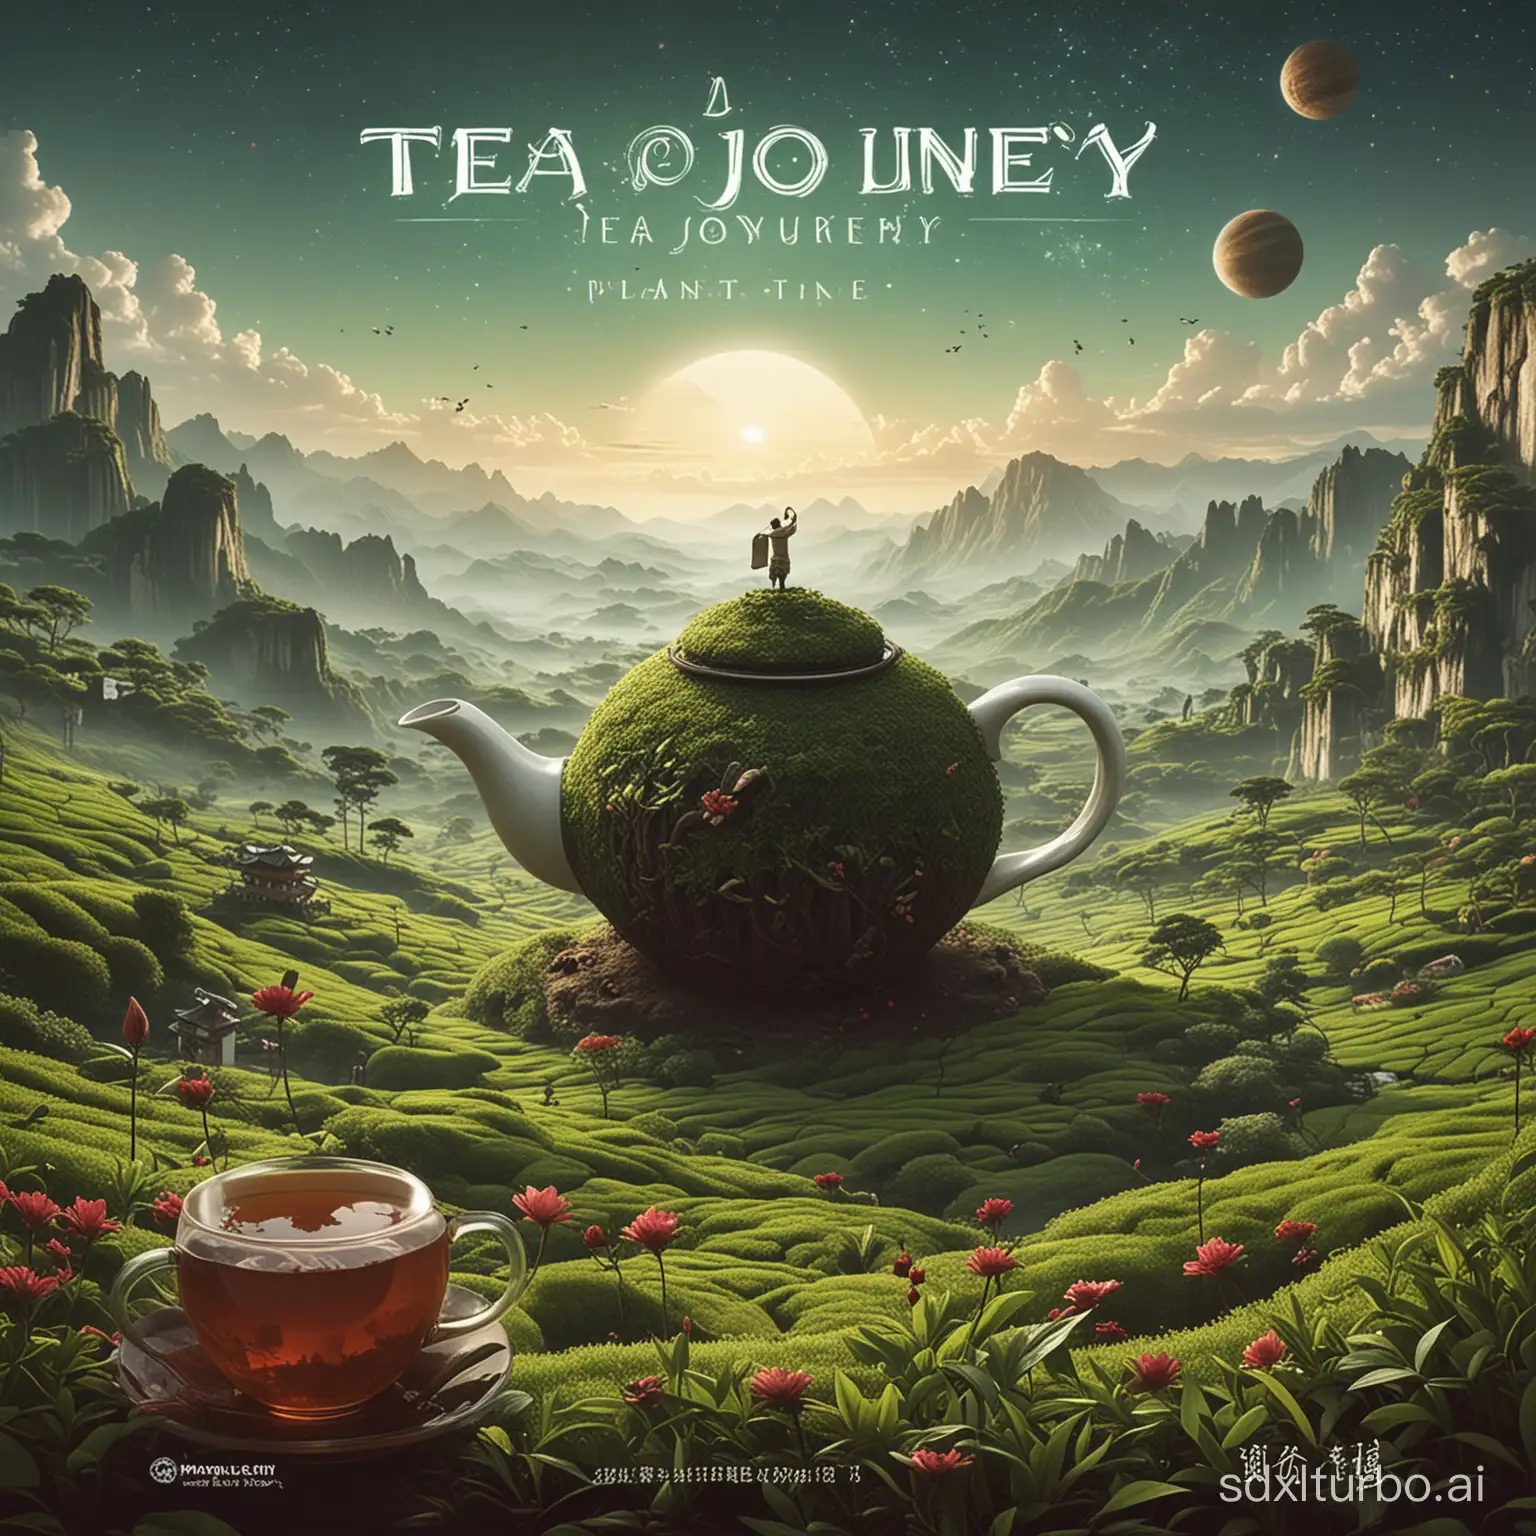 A Tea Journey Planet